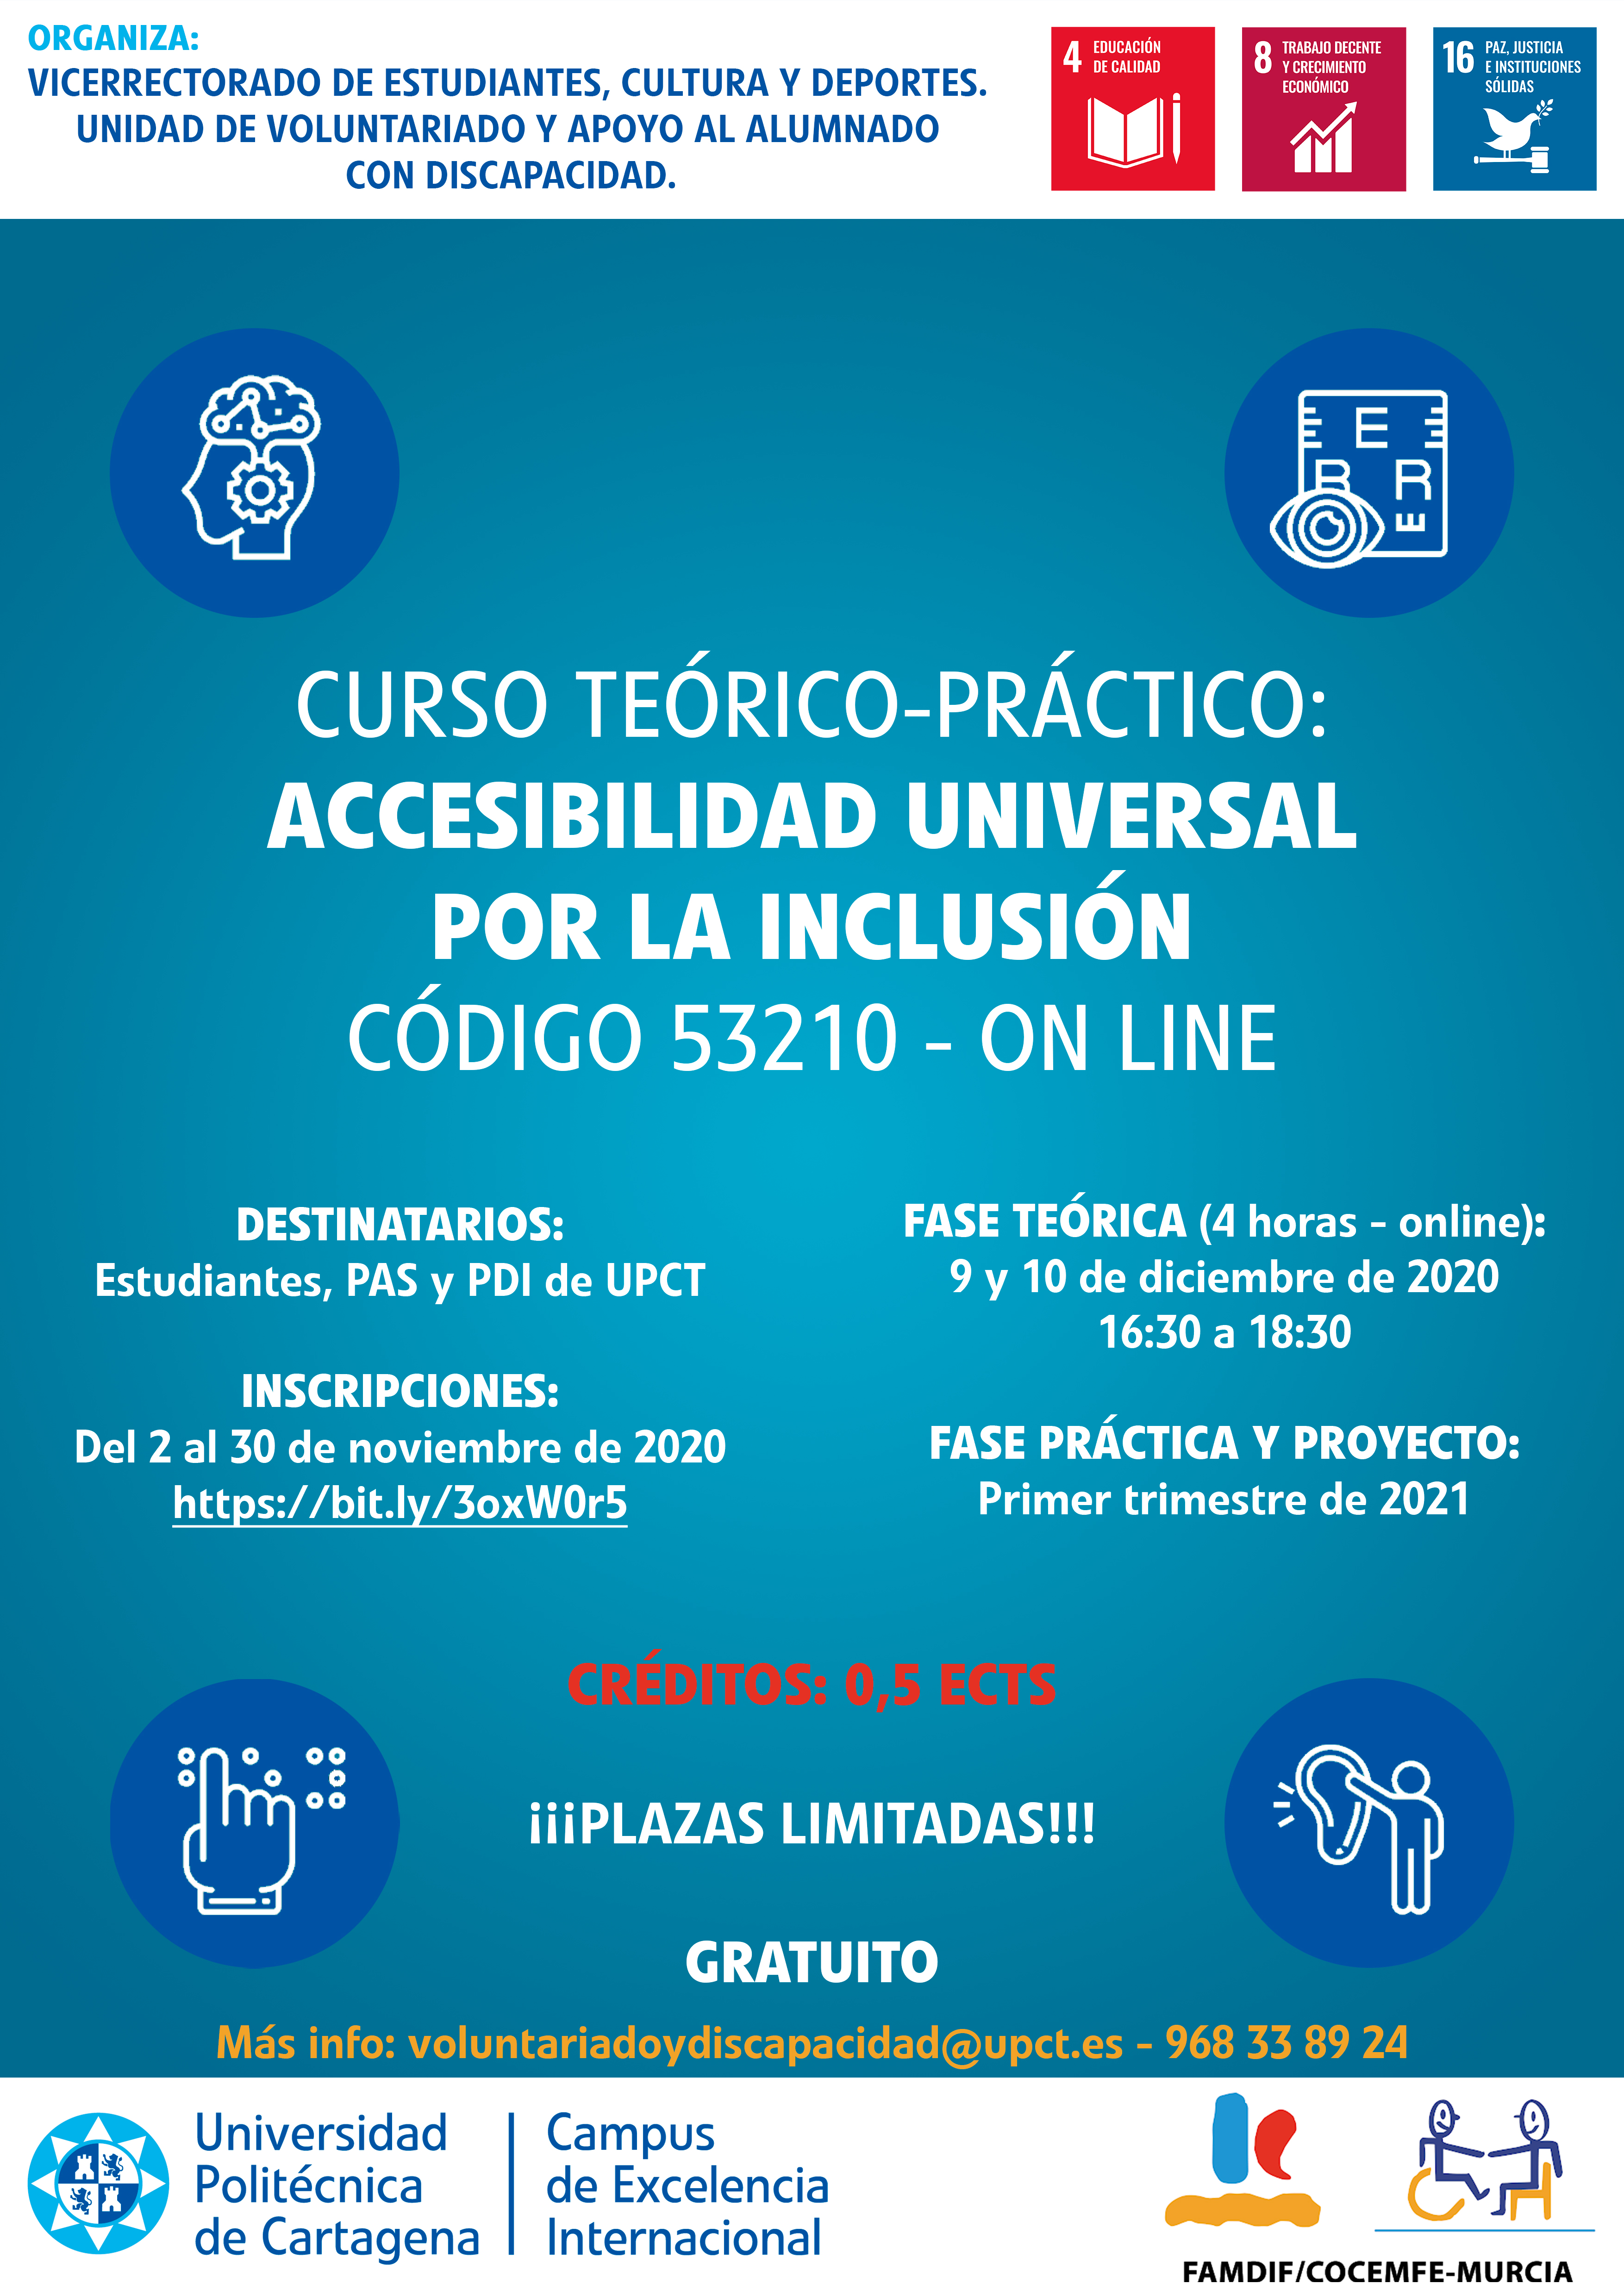 Curso teórico-práctico: Accesibilidad universal por la inclusión